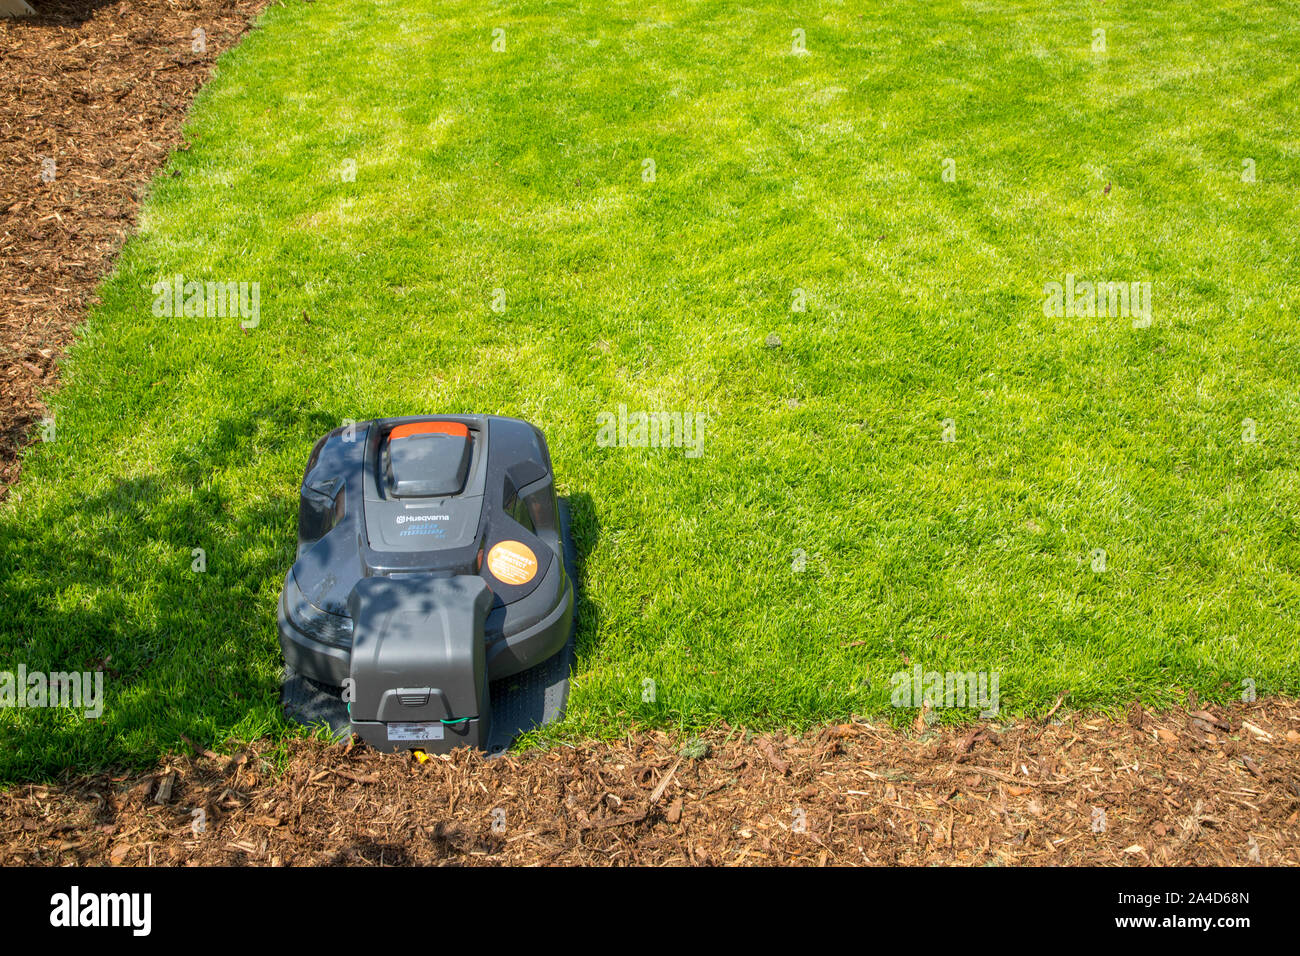 Tondeuse robot, de Husqvarna, tond la pelouse, automatiquement Banque D'Images